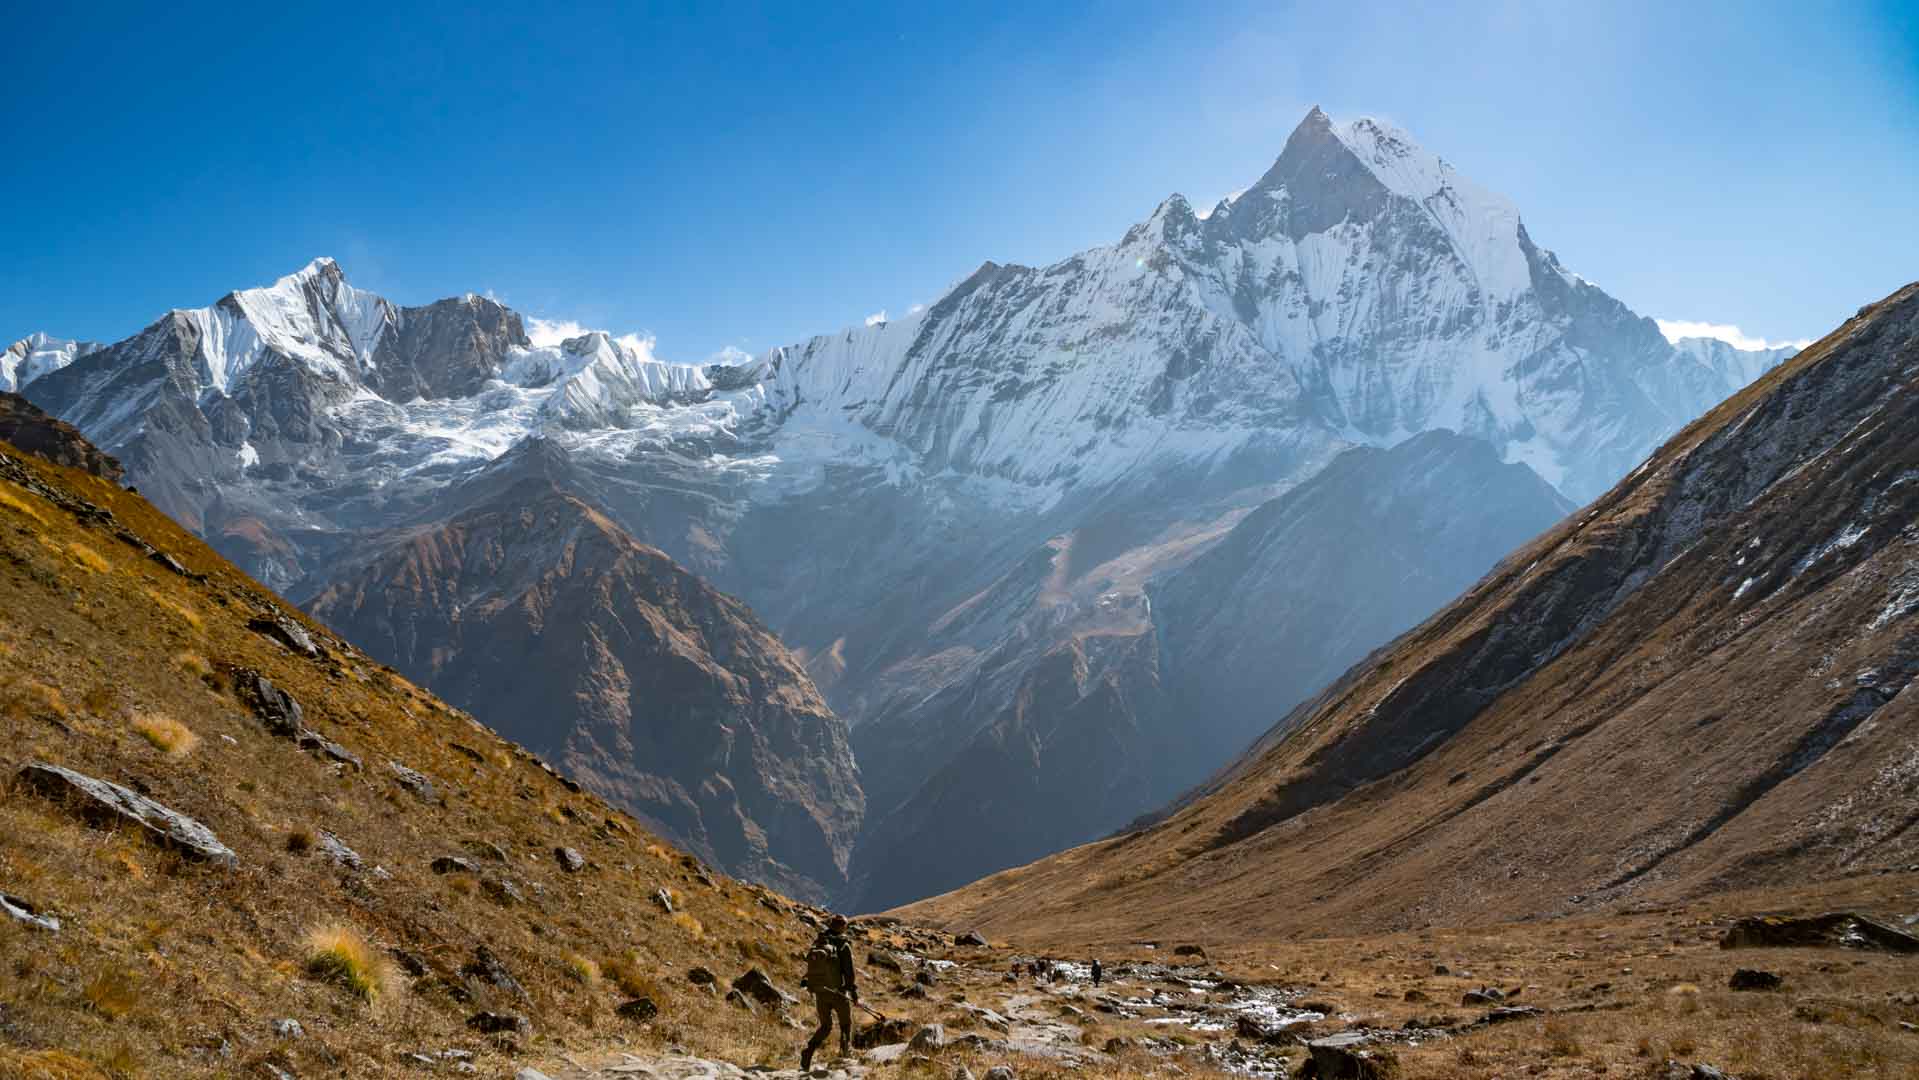 Trekking al campo base del Annapurna, guía de viaje